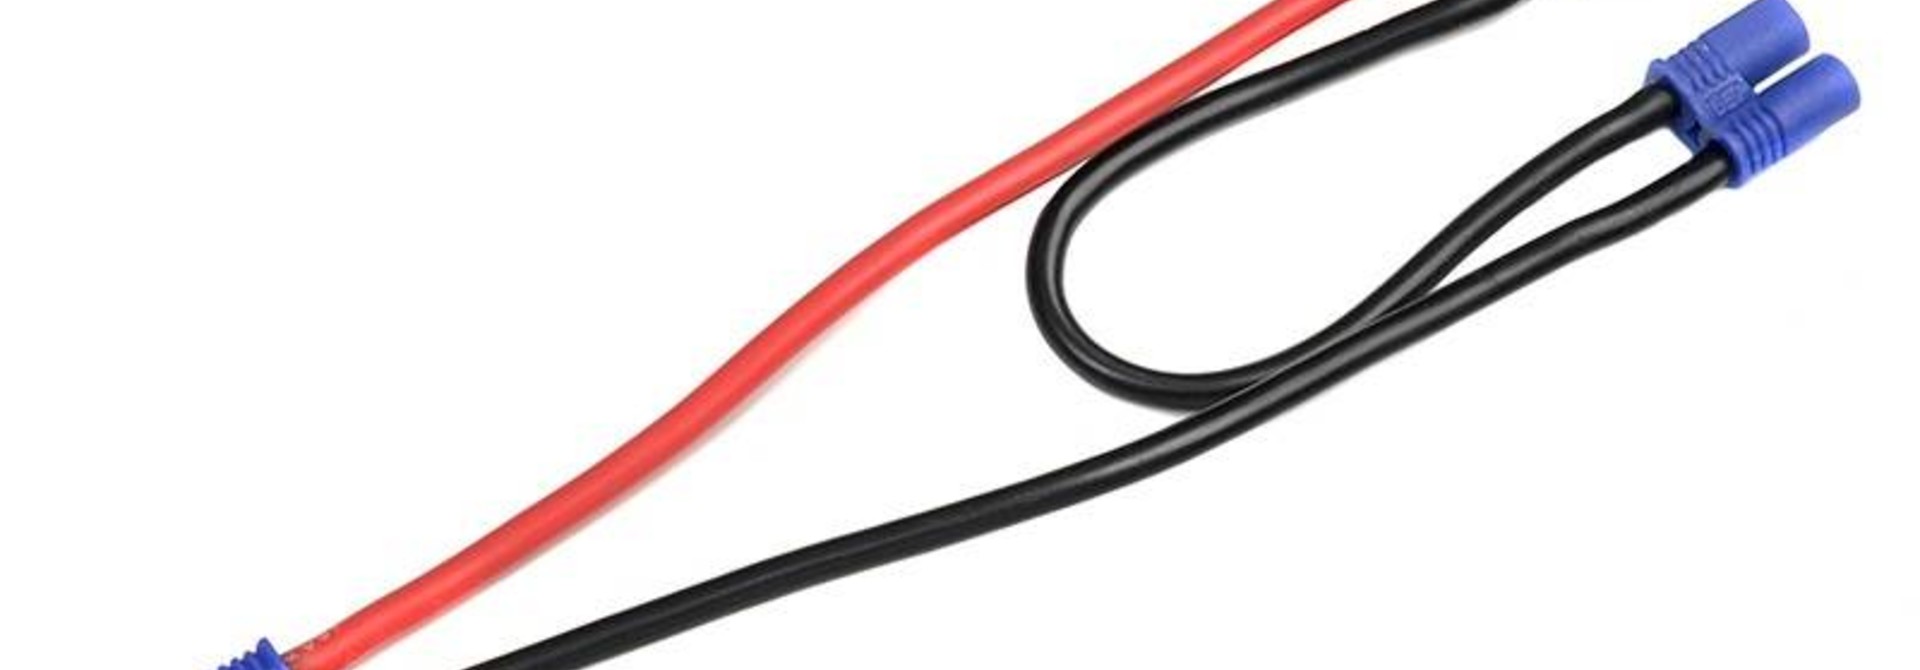 Revtec - Power Y-kabel - Serieel - EC-2 - 14AWG Siliconen-kabel - 12cm - 1 st